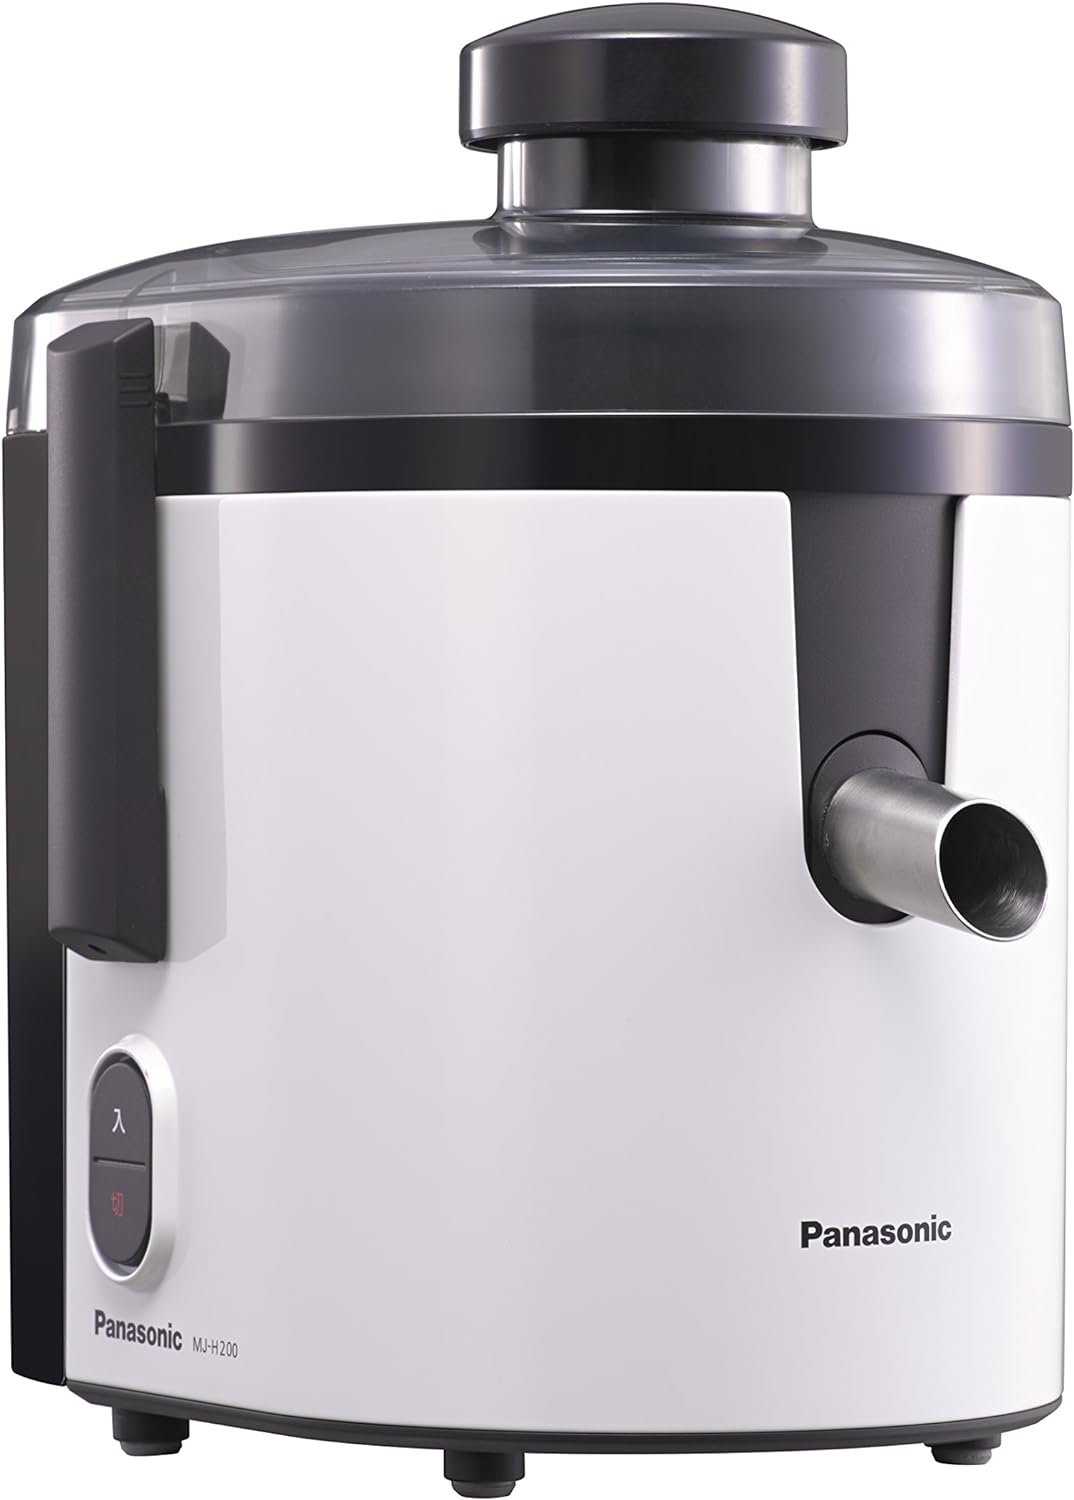 Panasonic パナソニック ジューサー 高速 レシピブック付 ホワイト MJ-H200-W キッチン 時短